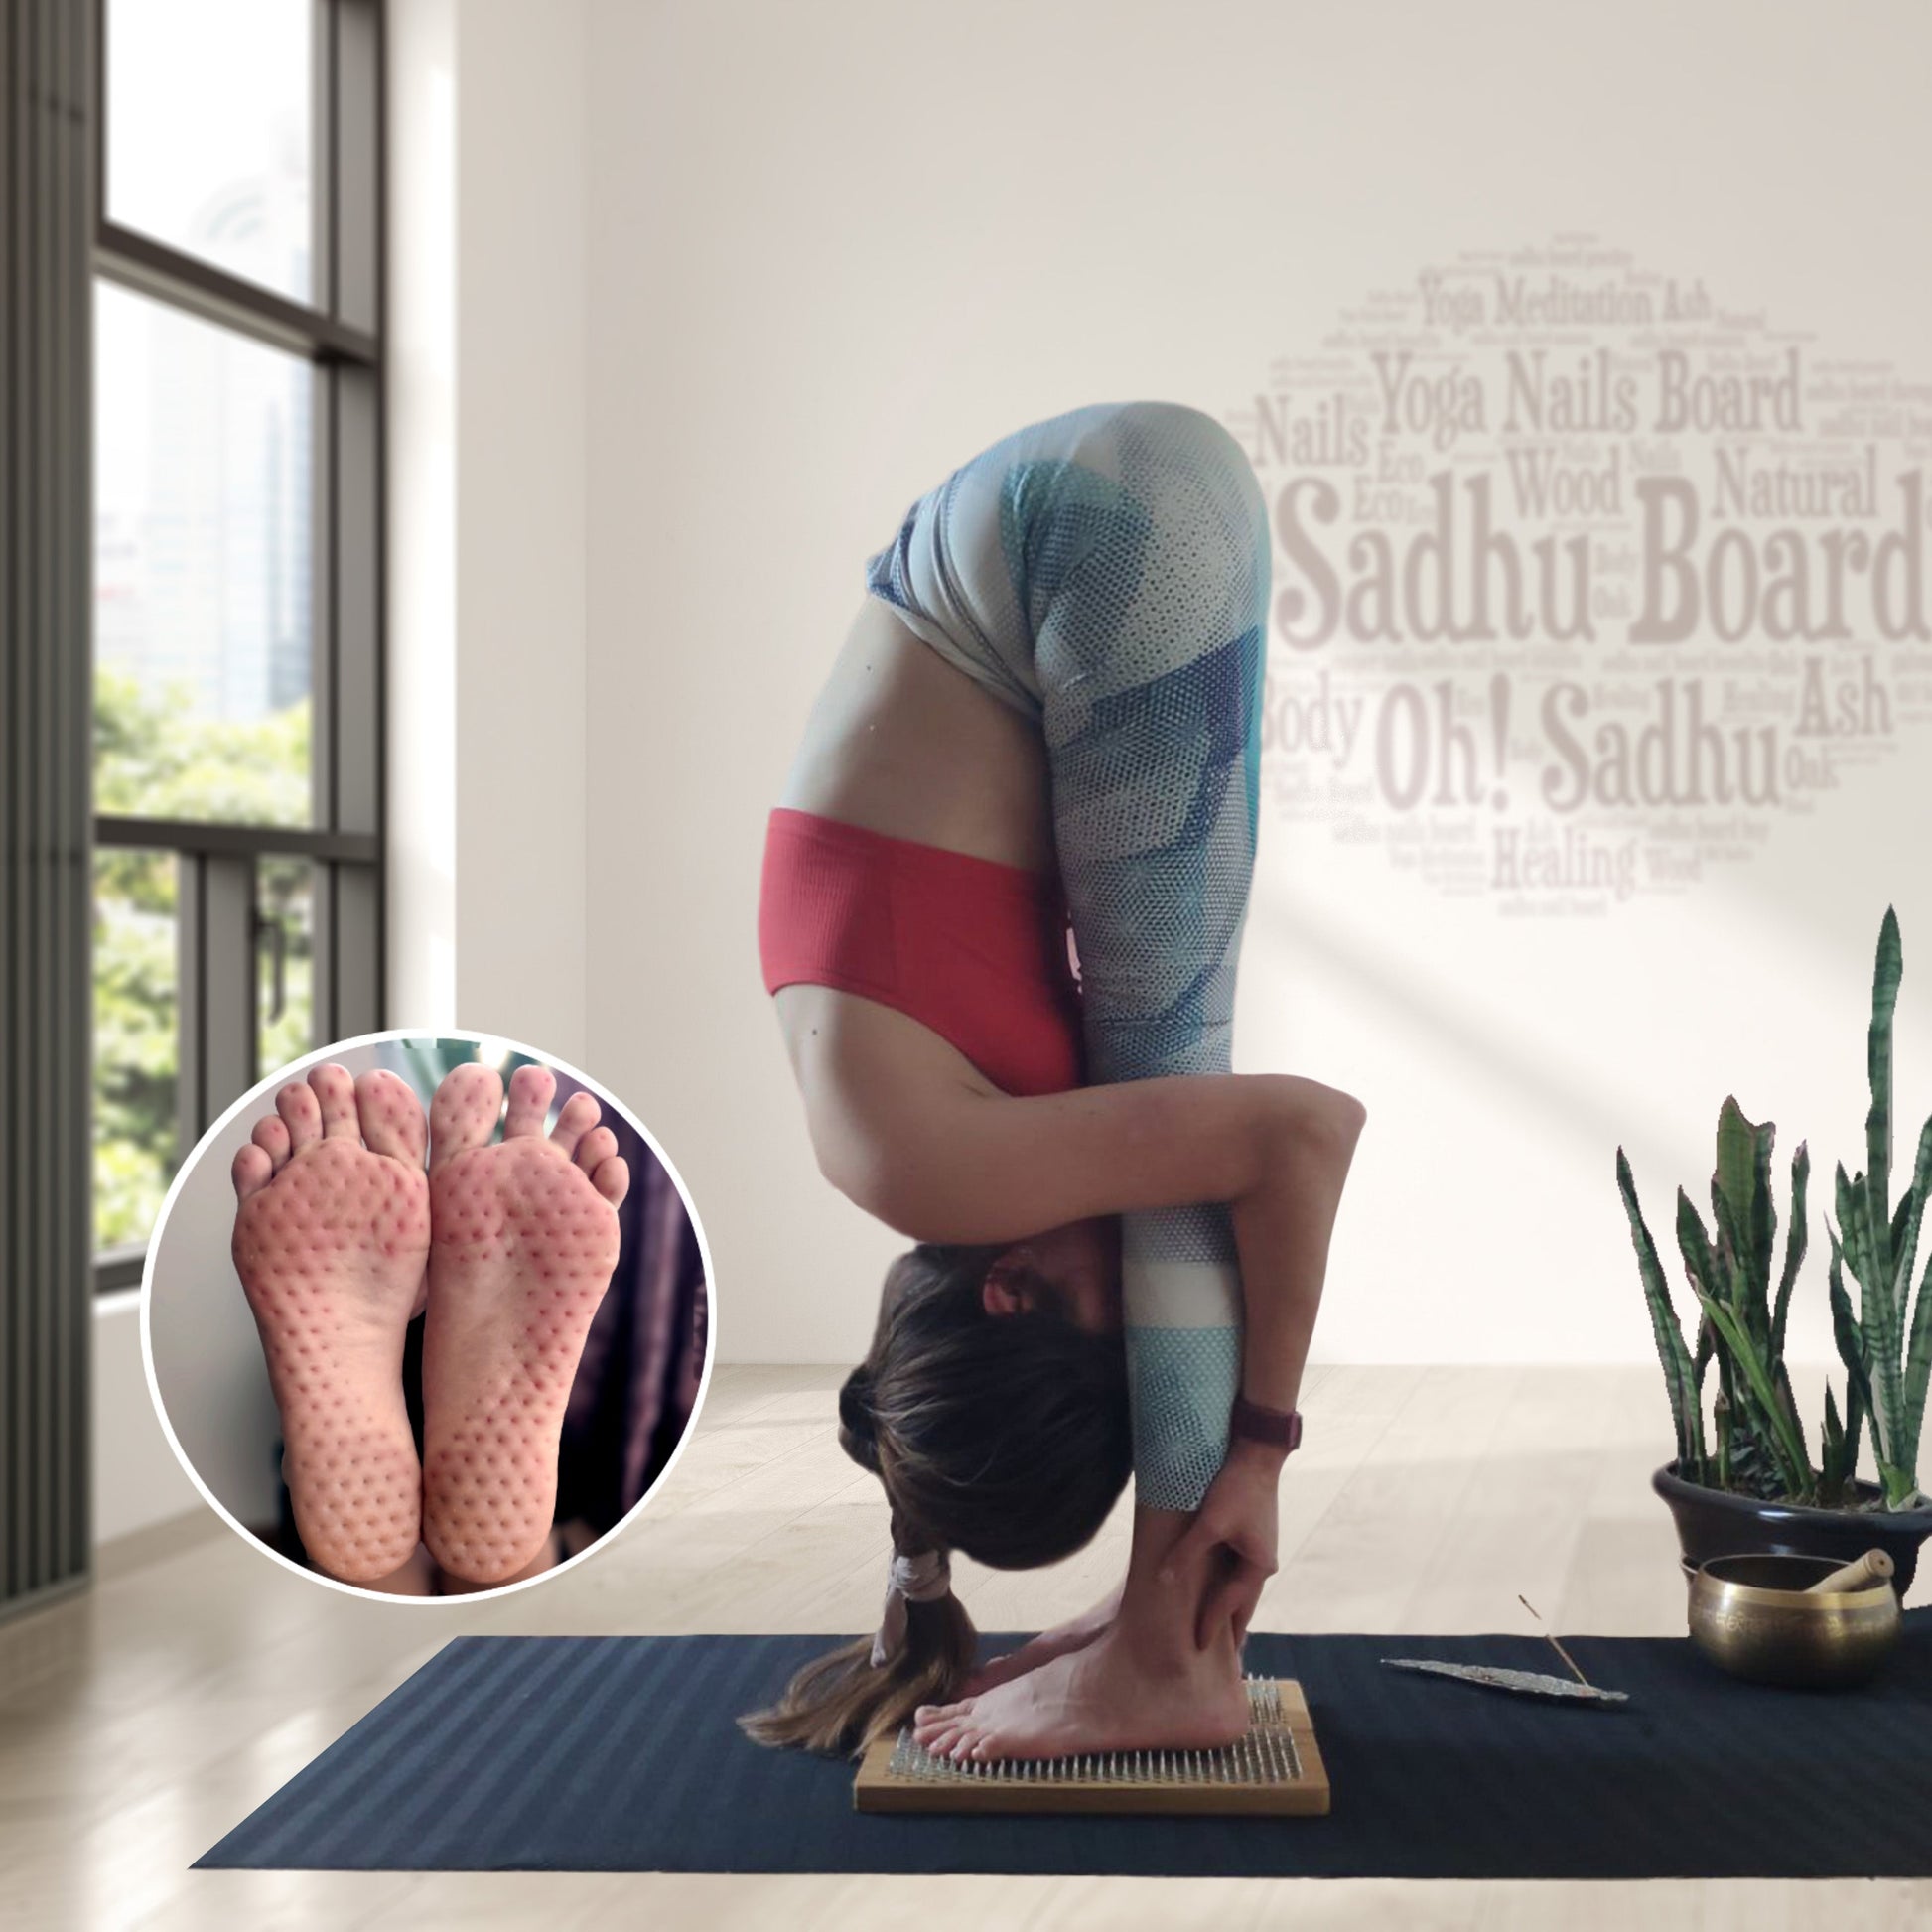 yoga girl standing on nails sadhu board